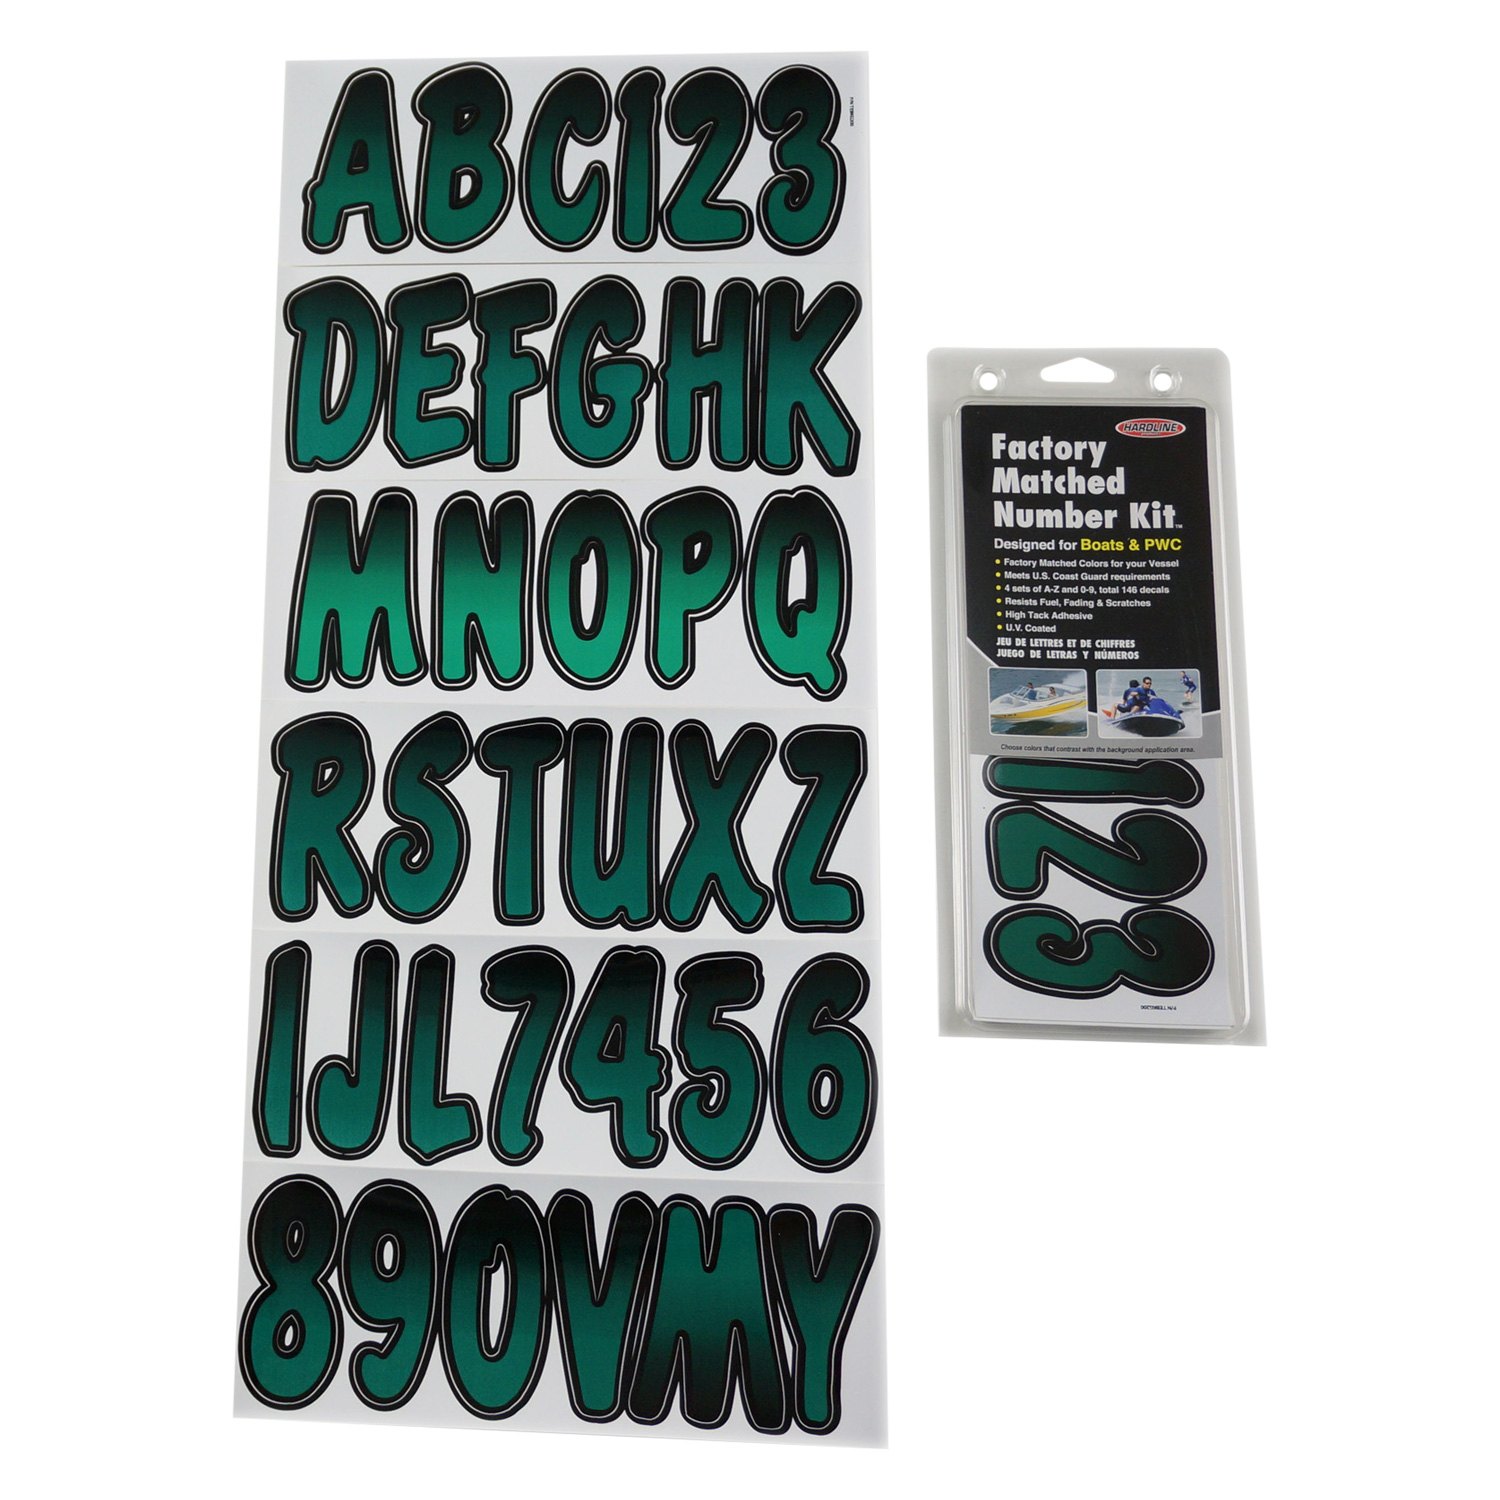 Hardline Products TEBKG200 Series 200 Forest Green/Black Factory Matched Registration Number Kit 